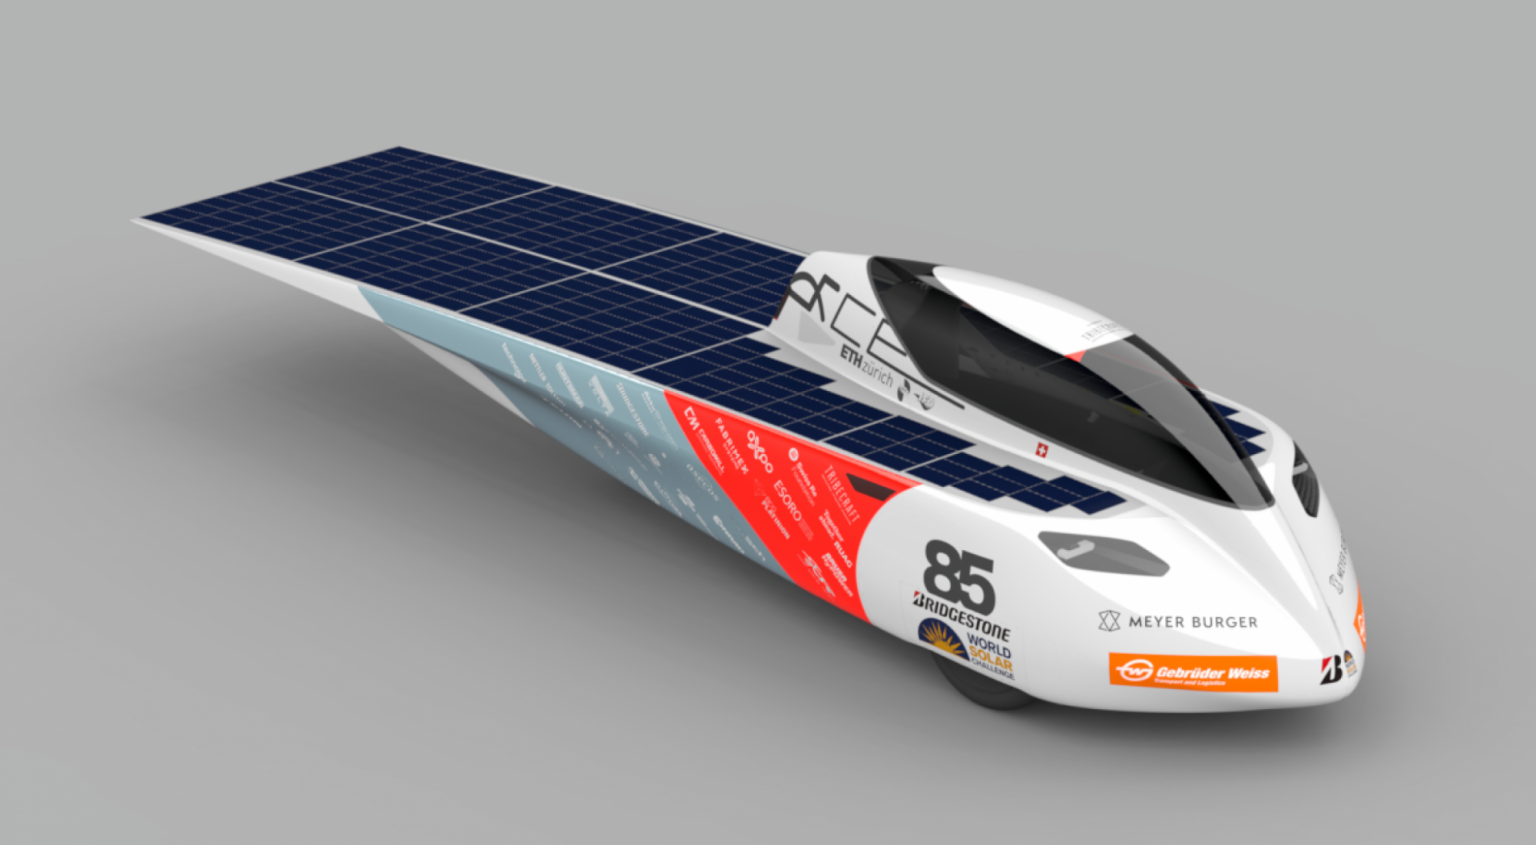 Gebrüder Weiss dopraví unikátní solární vùz na závod do Austrálie.